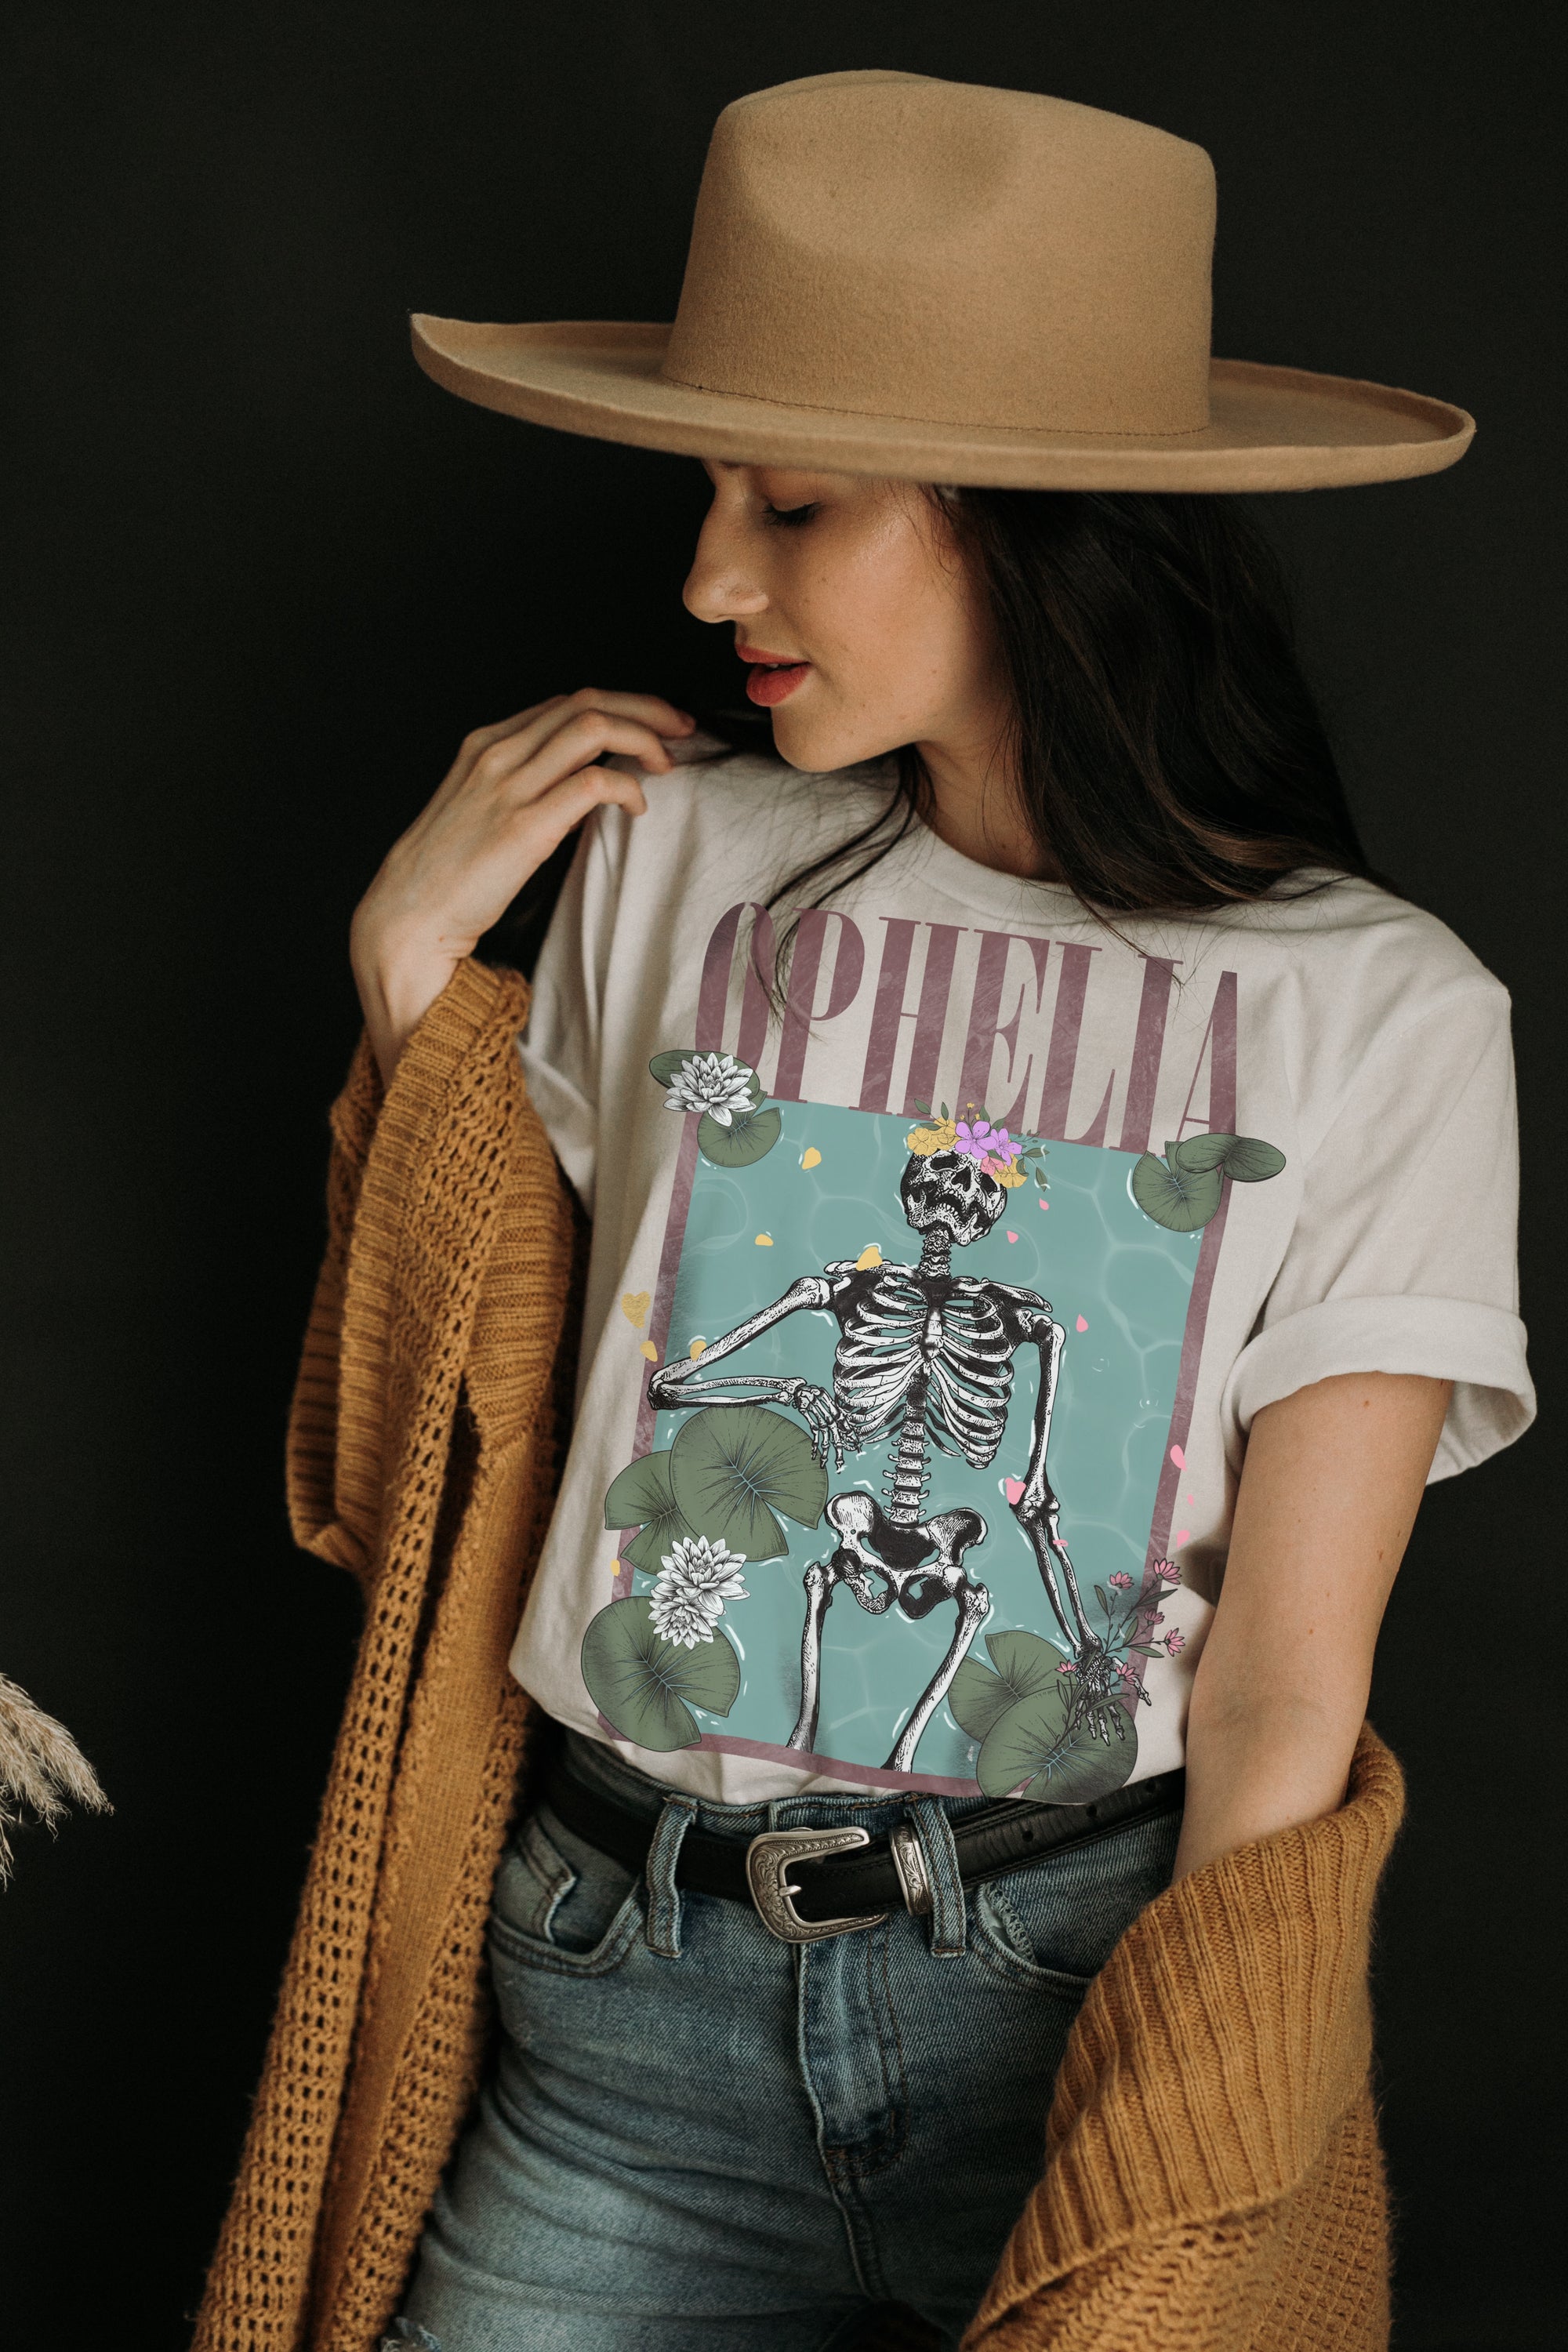 Ophelia Skeleton Graphic Tee